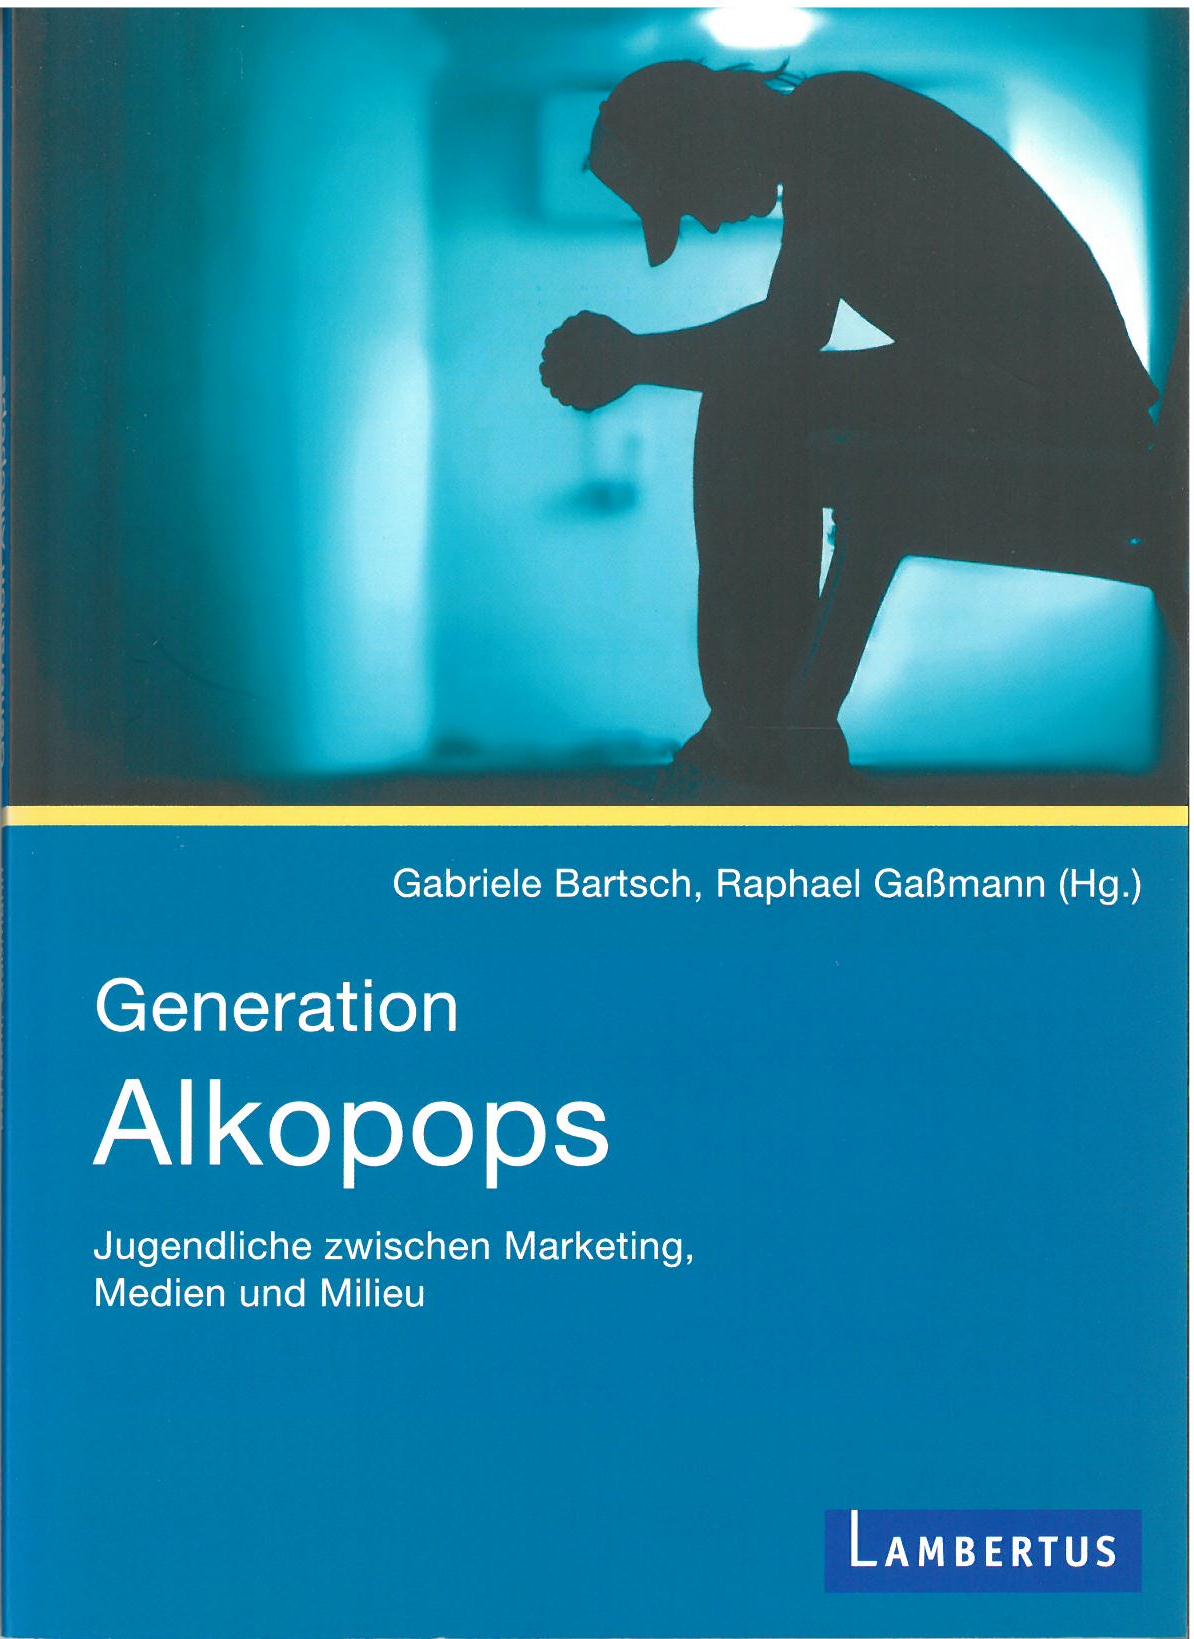 Fachliteratur - Generation Alkopops - Jugendliche zwischen Marketing, Medien und Milieu